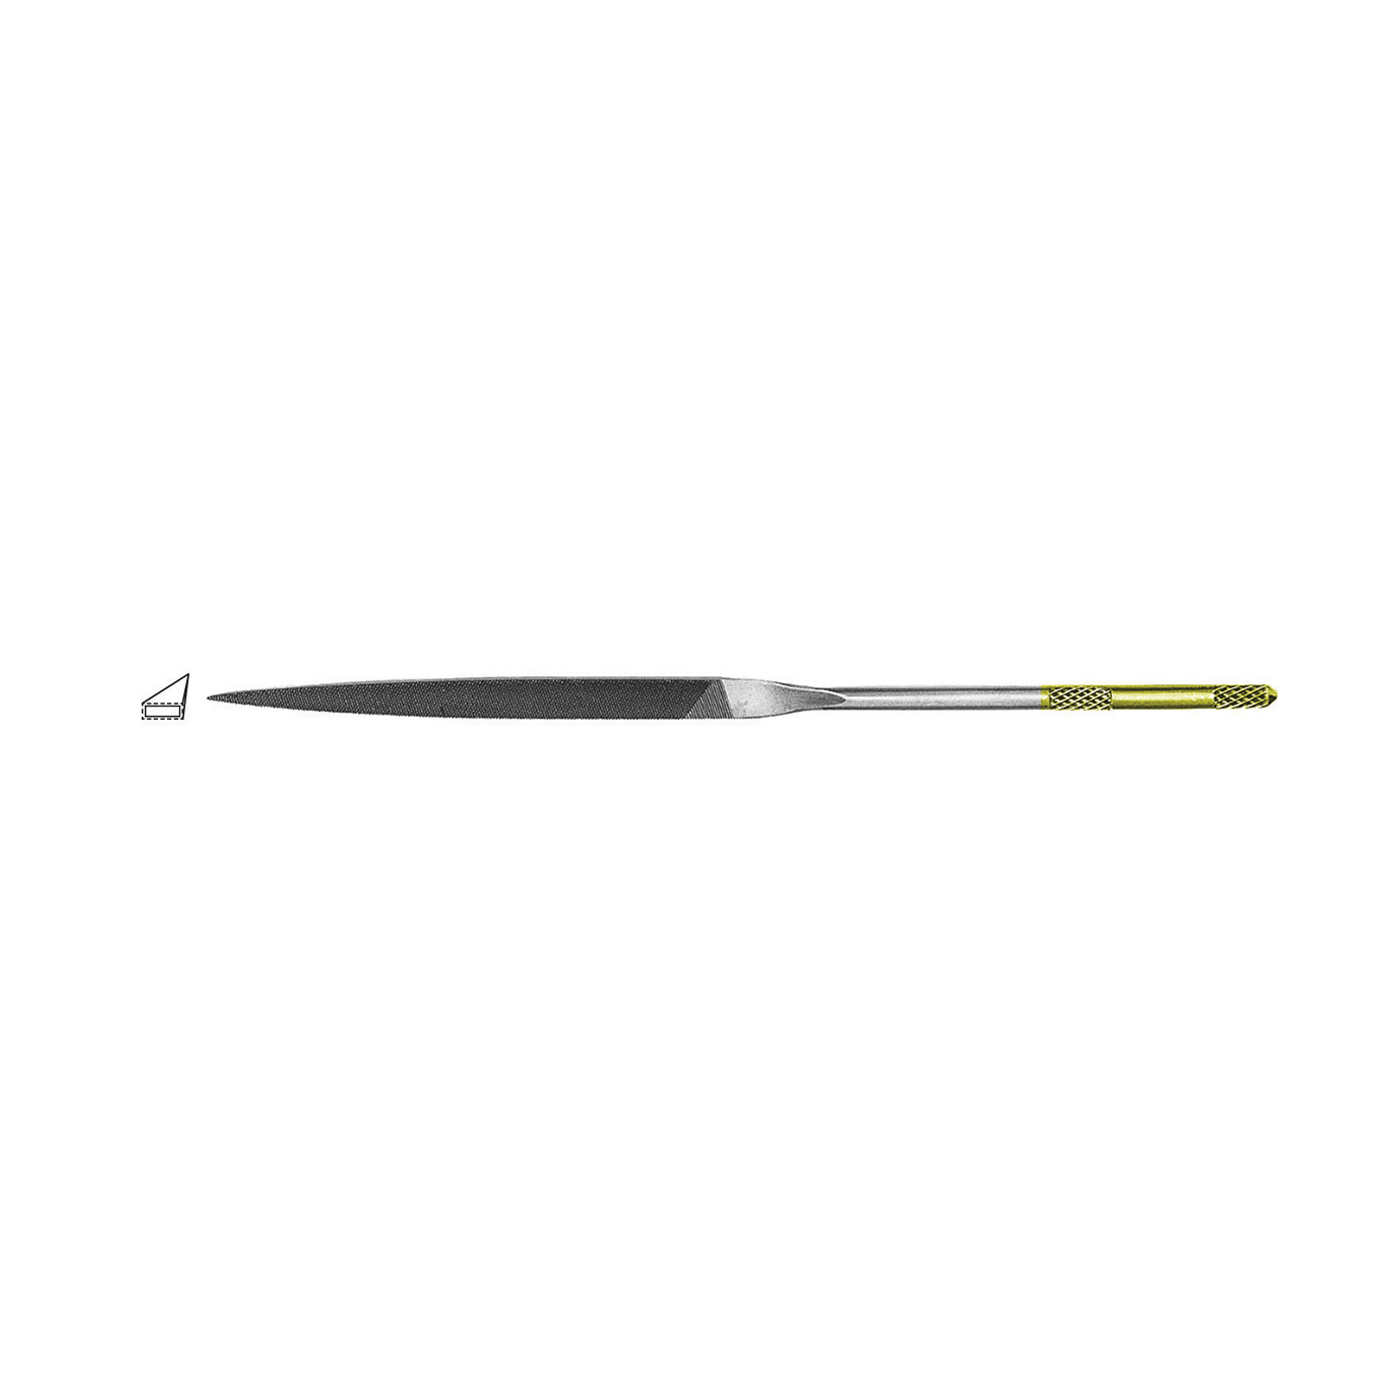 Titan Precision Needle File, Warding, Cut 3 - 1 piece